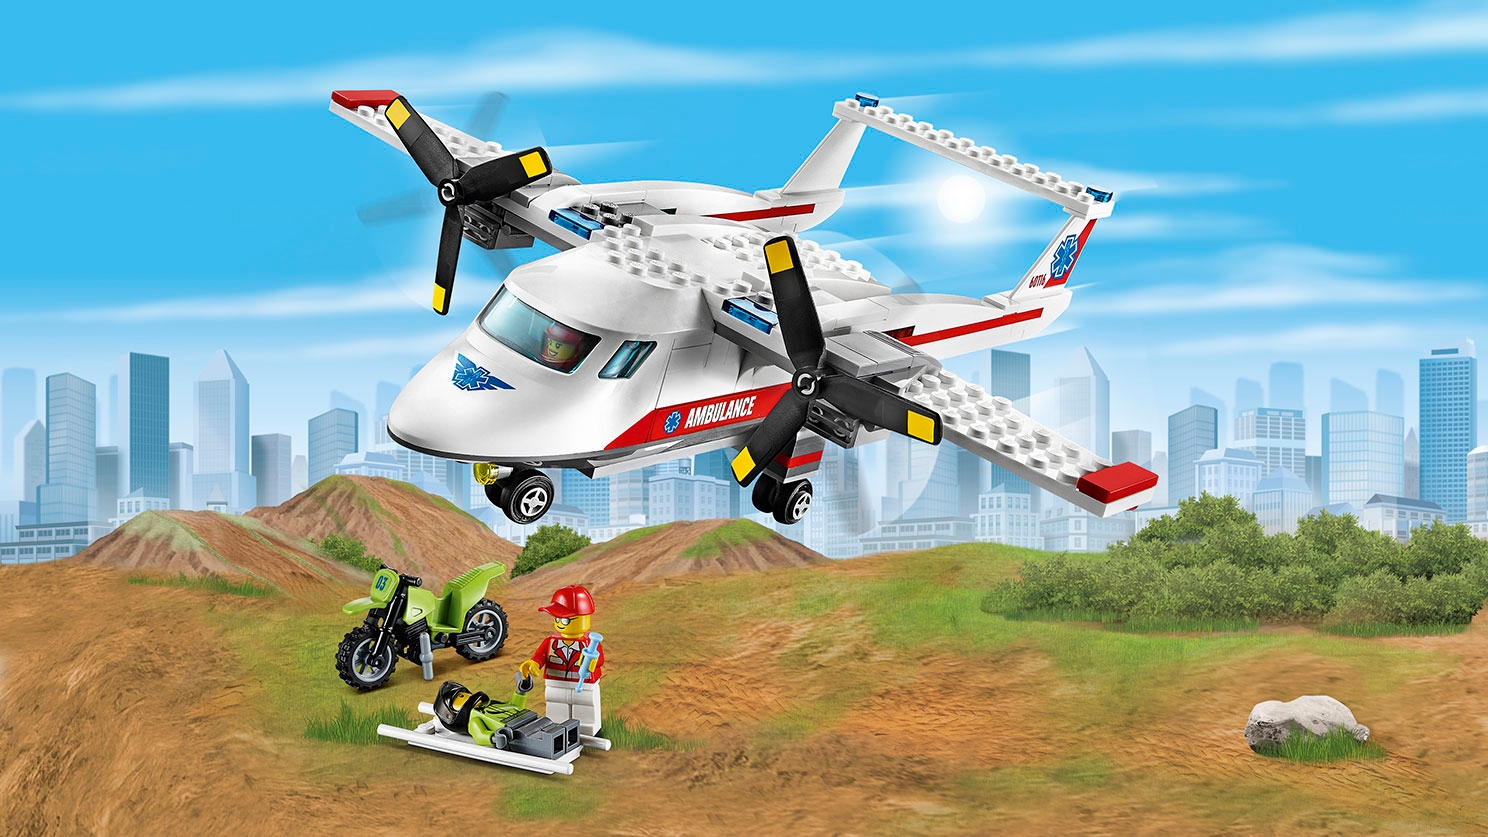 LEGO City Great Vehicles plane rescue – Ambulance Plane 60116